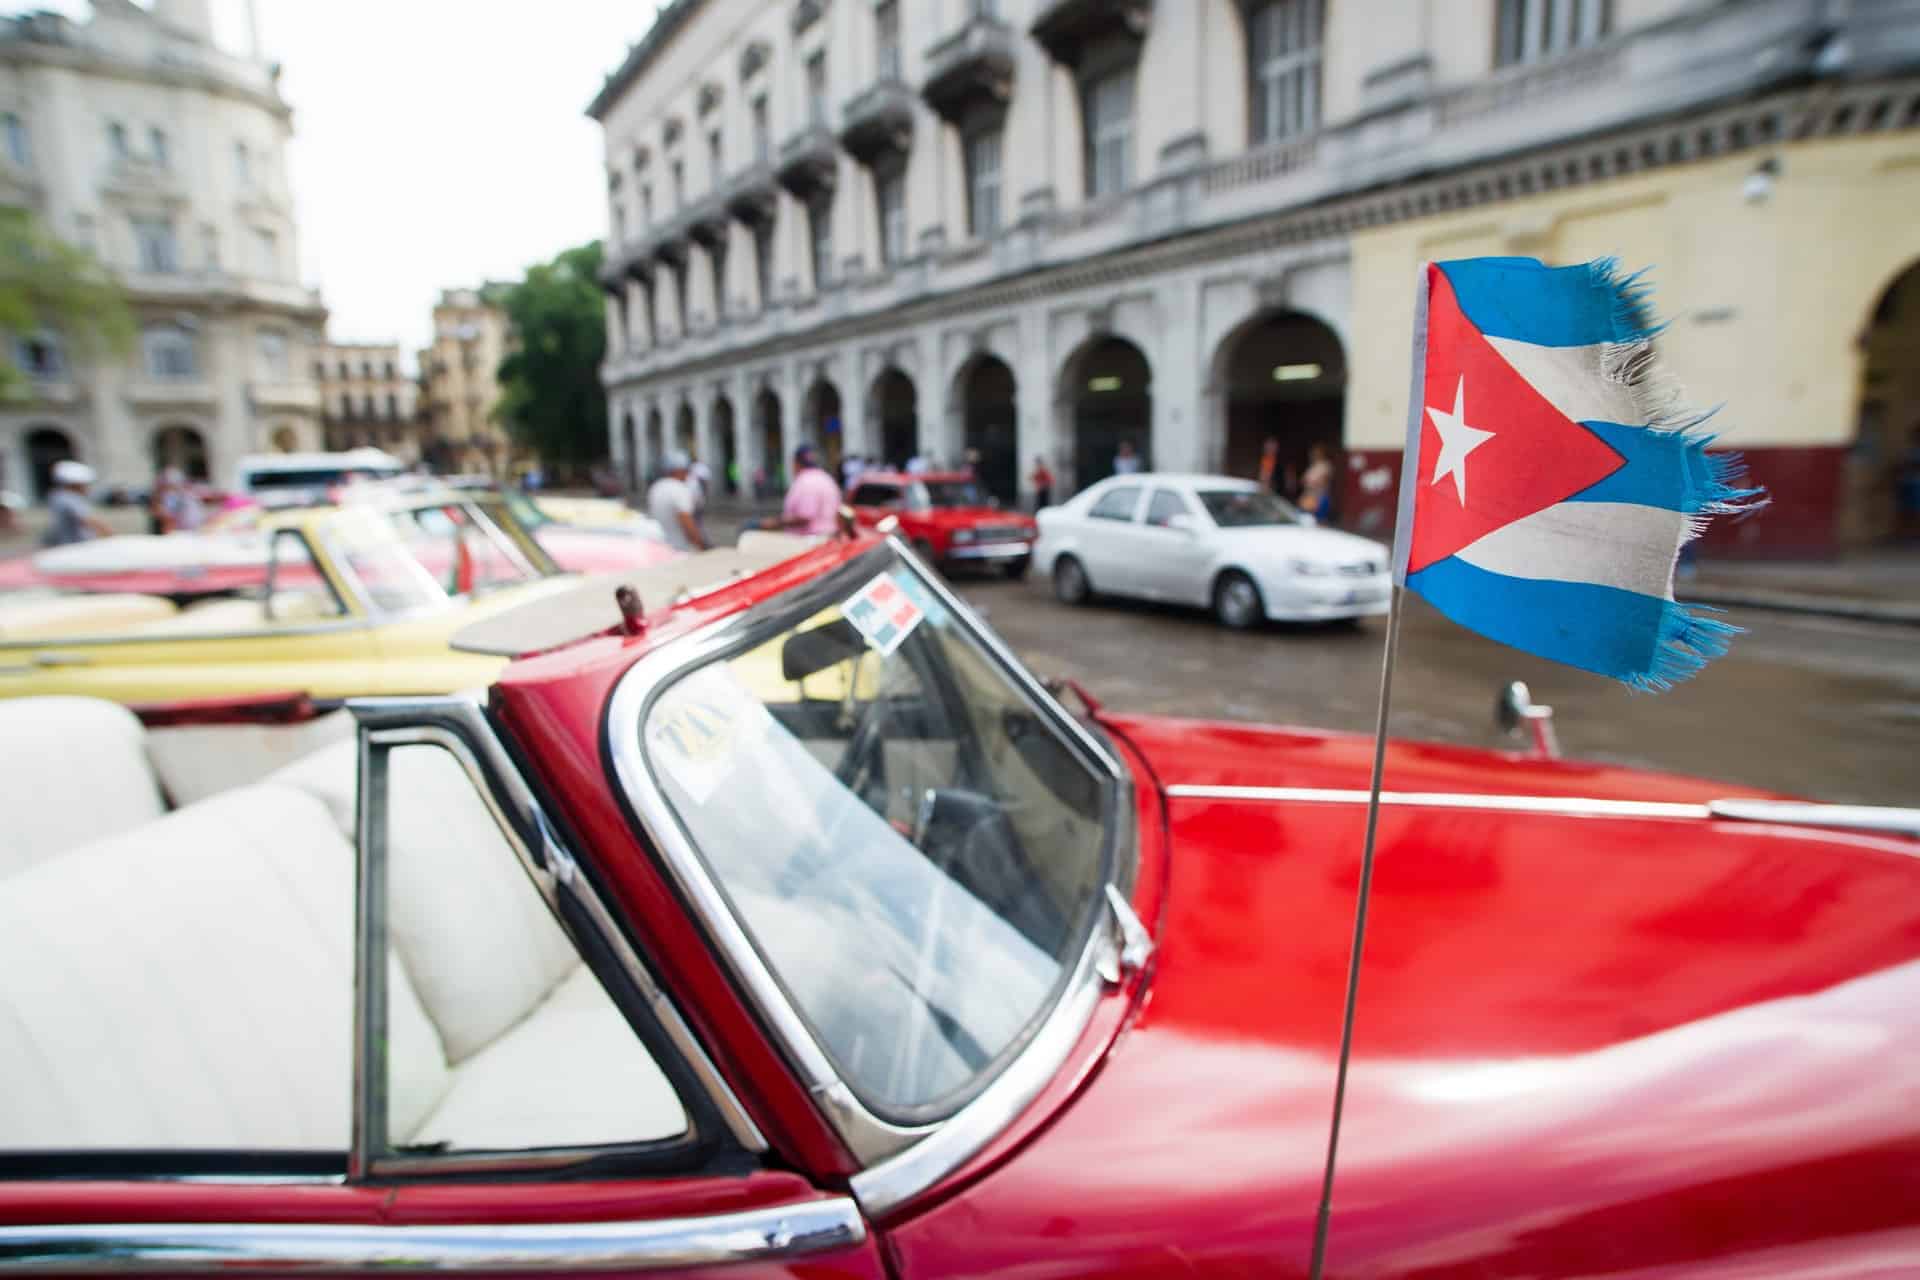 The Cuban flag on a car in Havana.